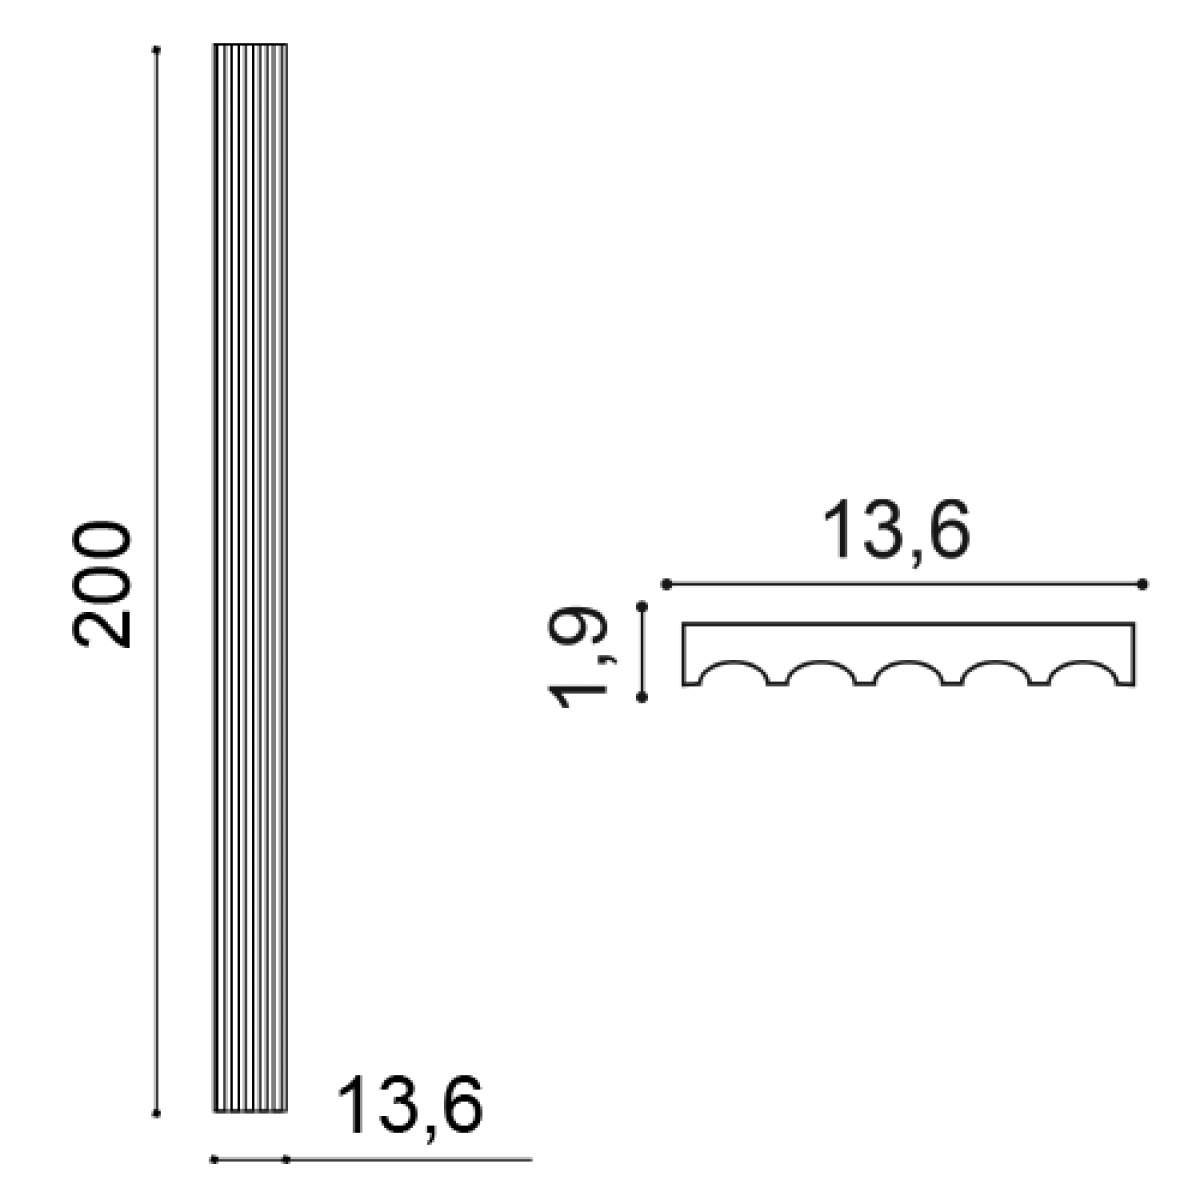 Pilastru Luxxus K200, Dimensiuni: 13.6 X 1.9 X 200 cm, Orac Decor, Coloane si semicoloane 